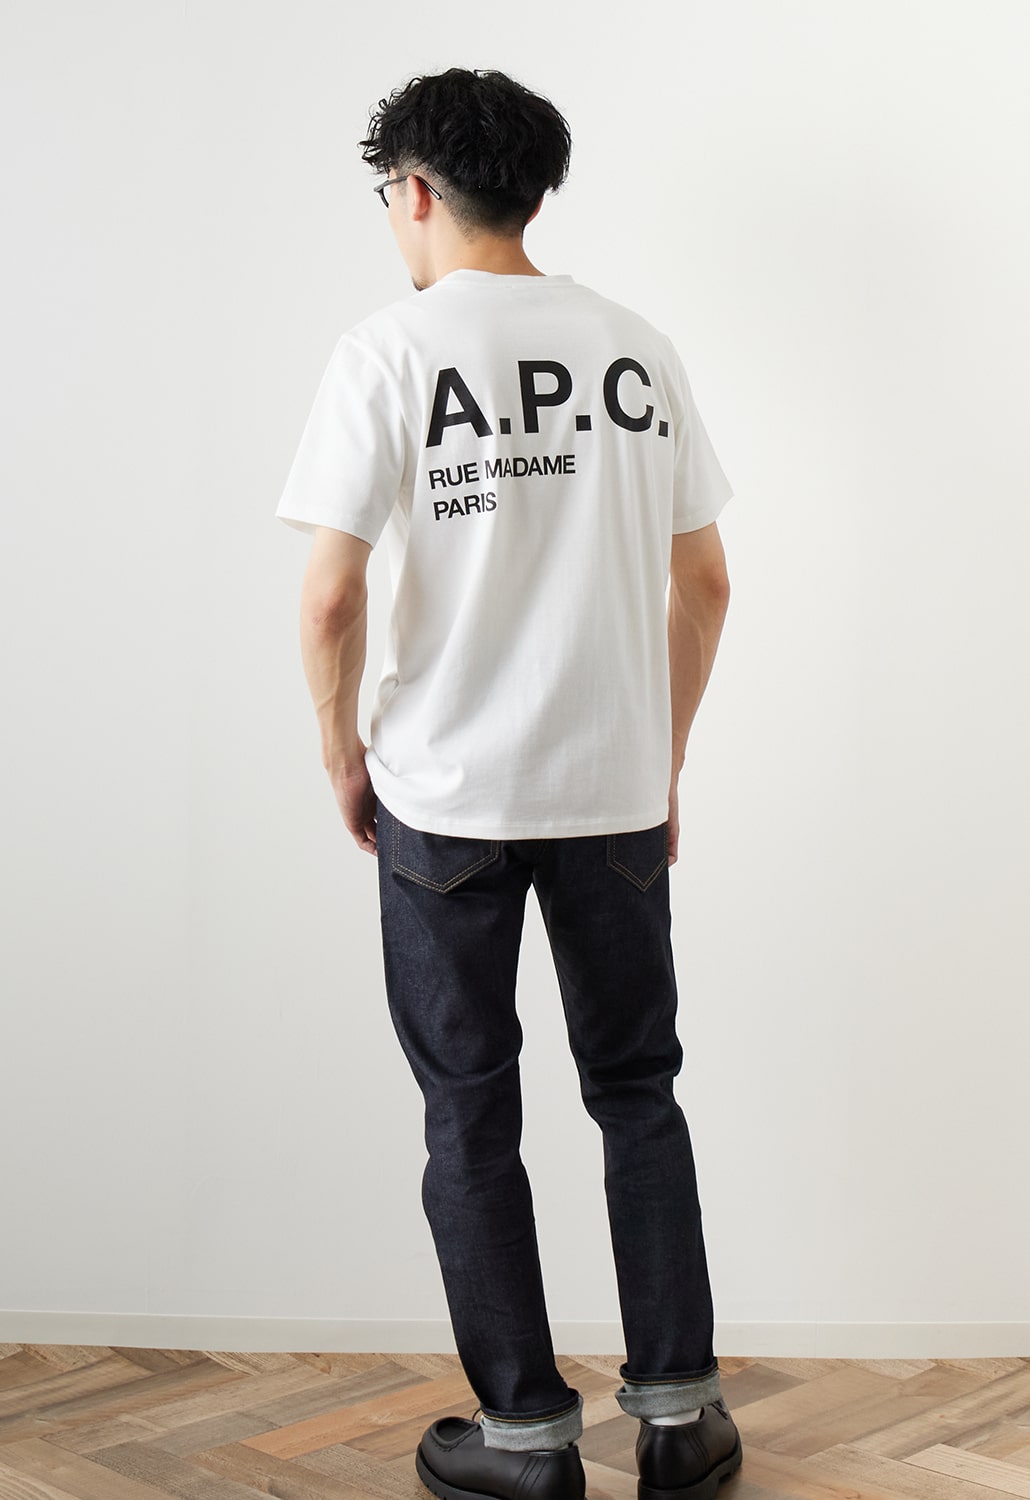 A.P.C.(アー・ペー・セー)の別注デザインTシャツが販売スタート